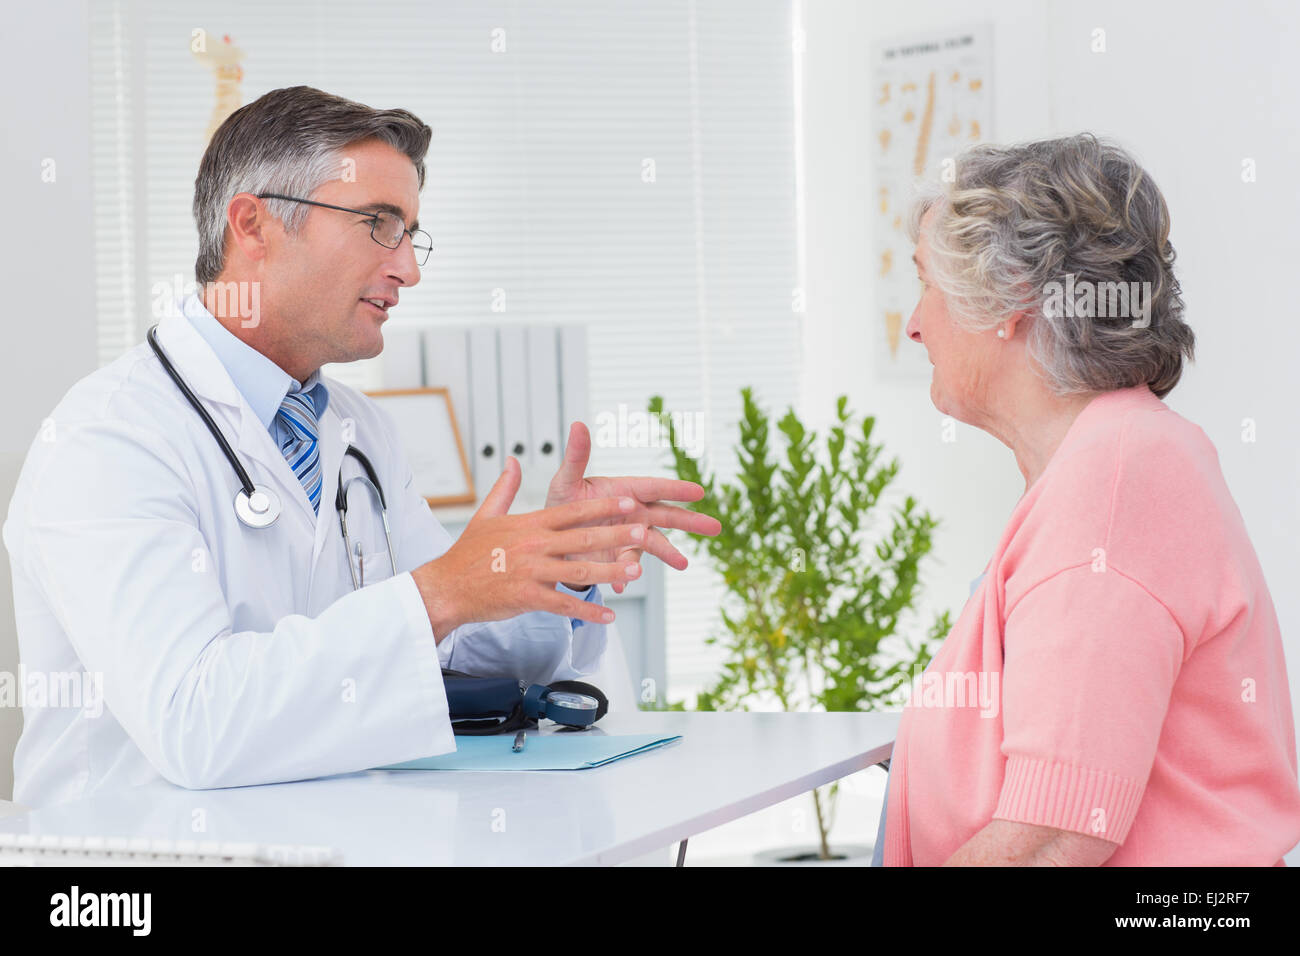 Männlichen Arzt im Gespräch mit der Patientin am Tisch Stockfoto